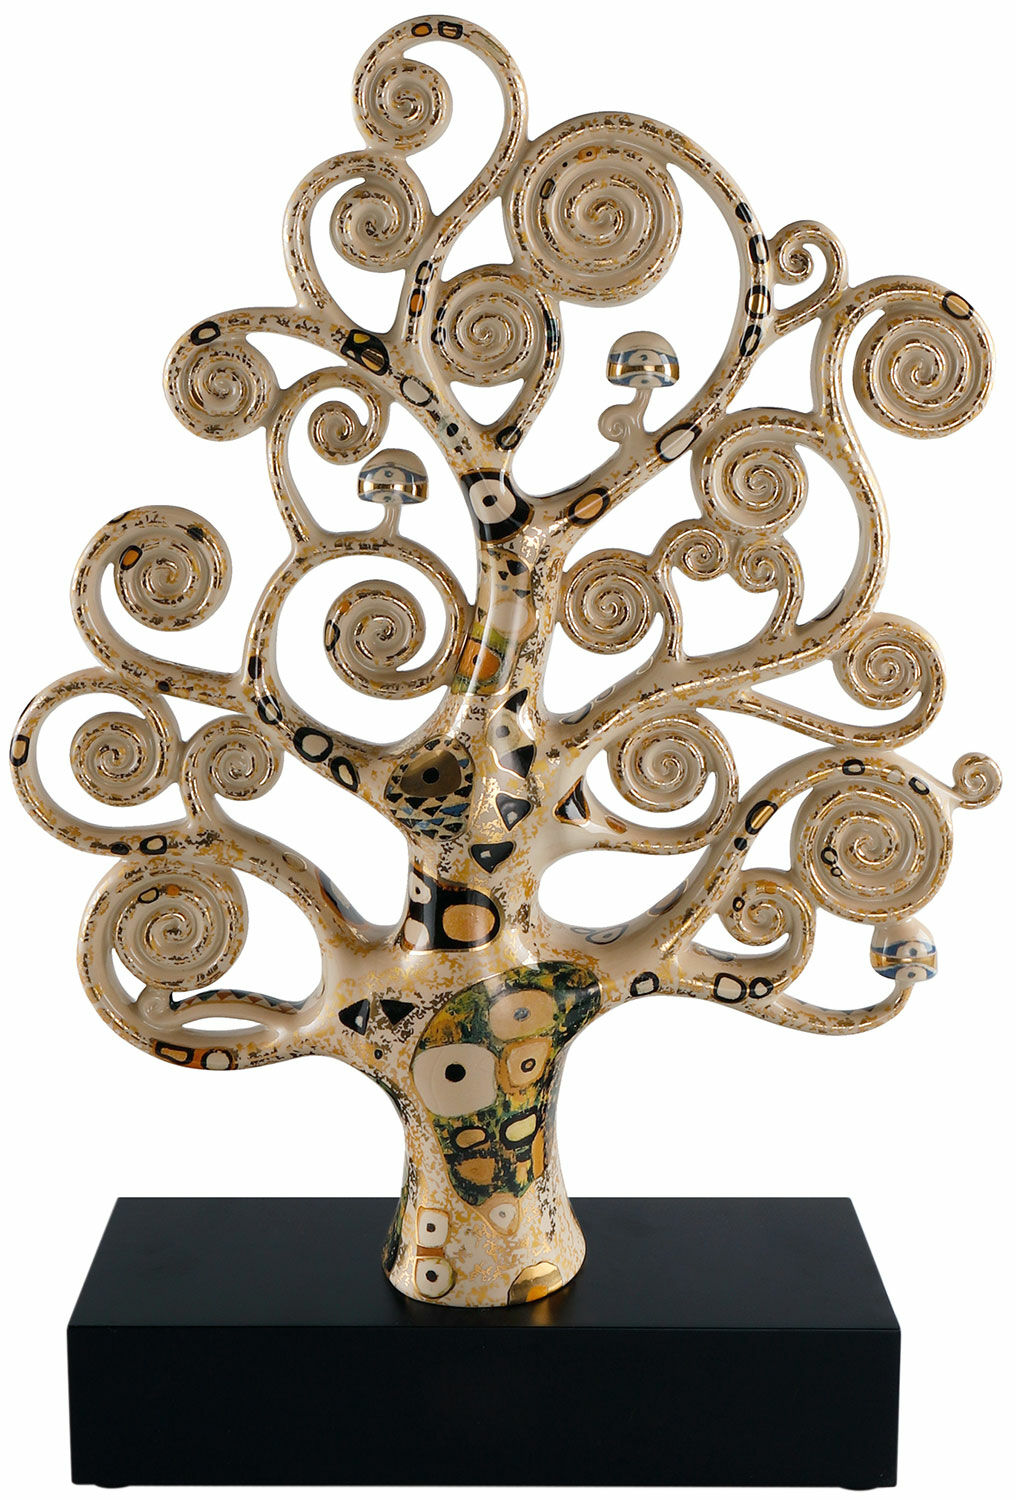 Porcelain sculpture "Tree of Life" by Gustav Klimt